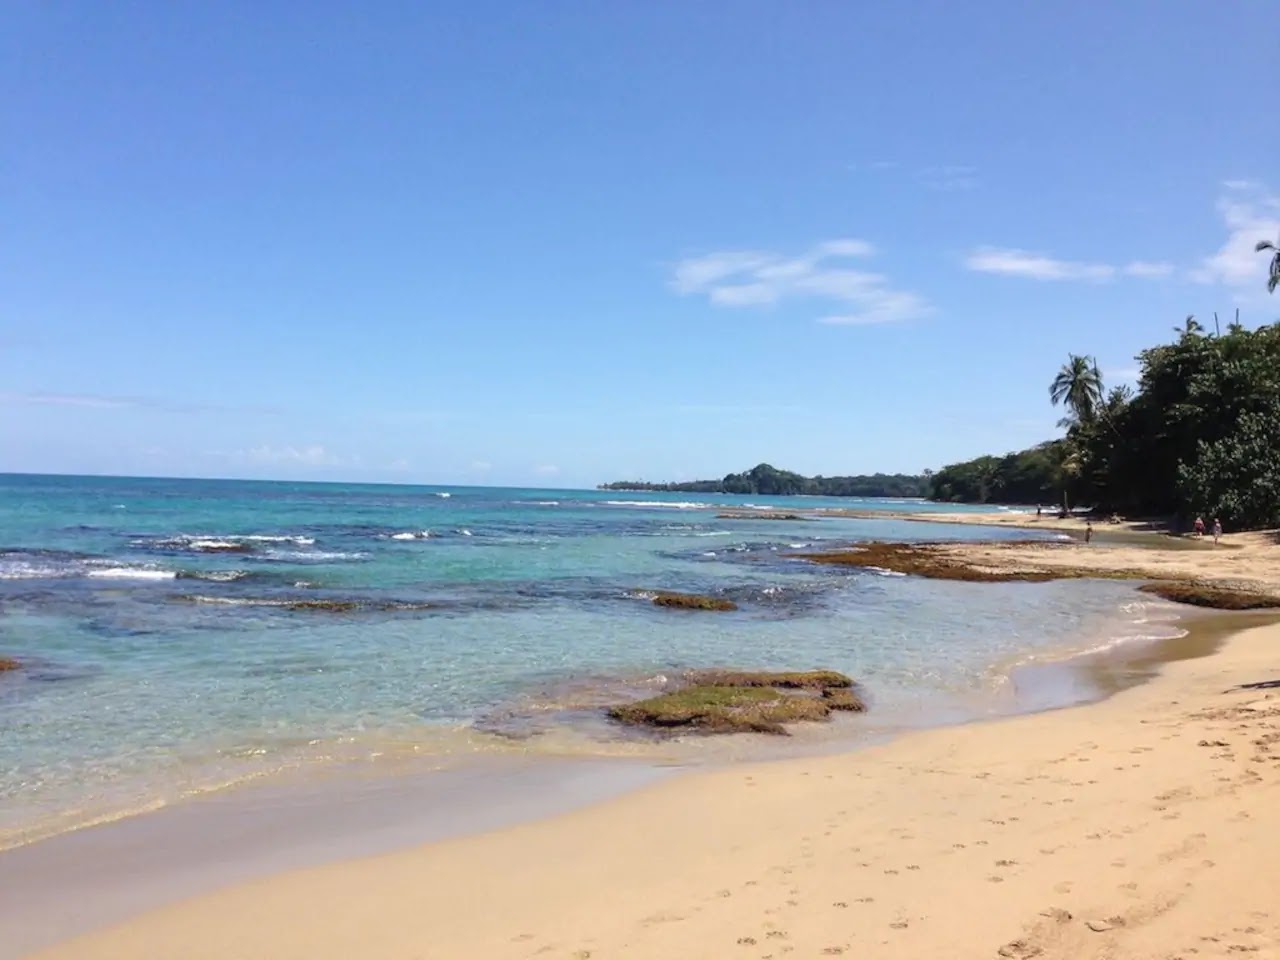 Foto af Chiquita beach med rummelig kyst